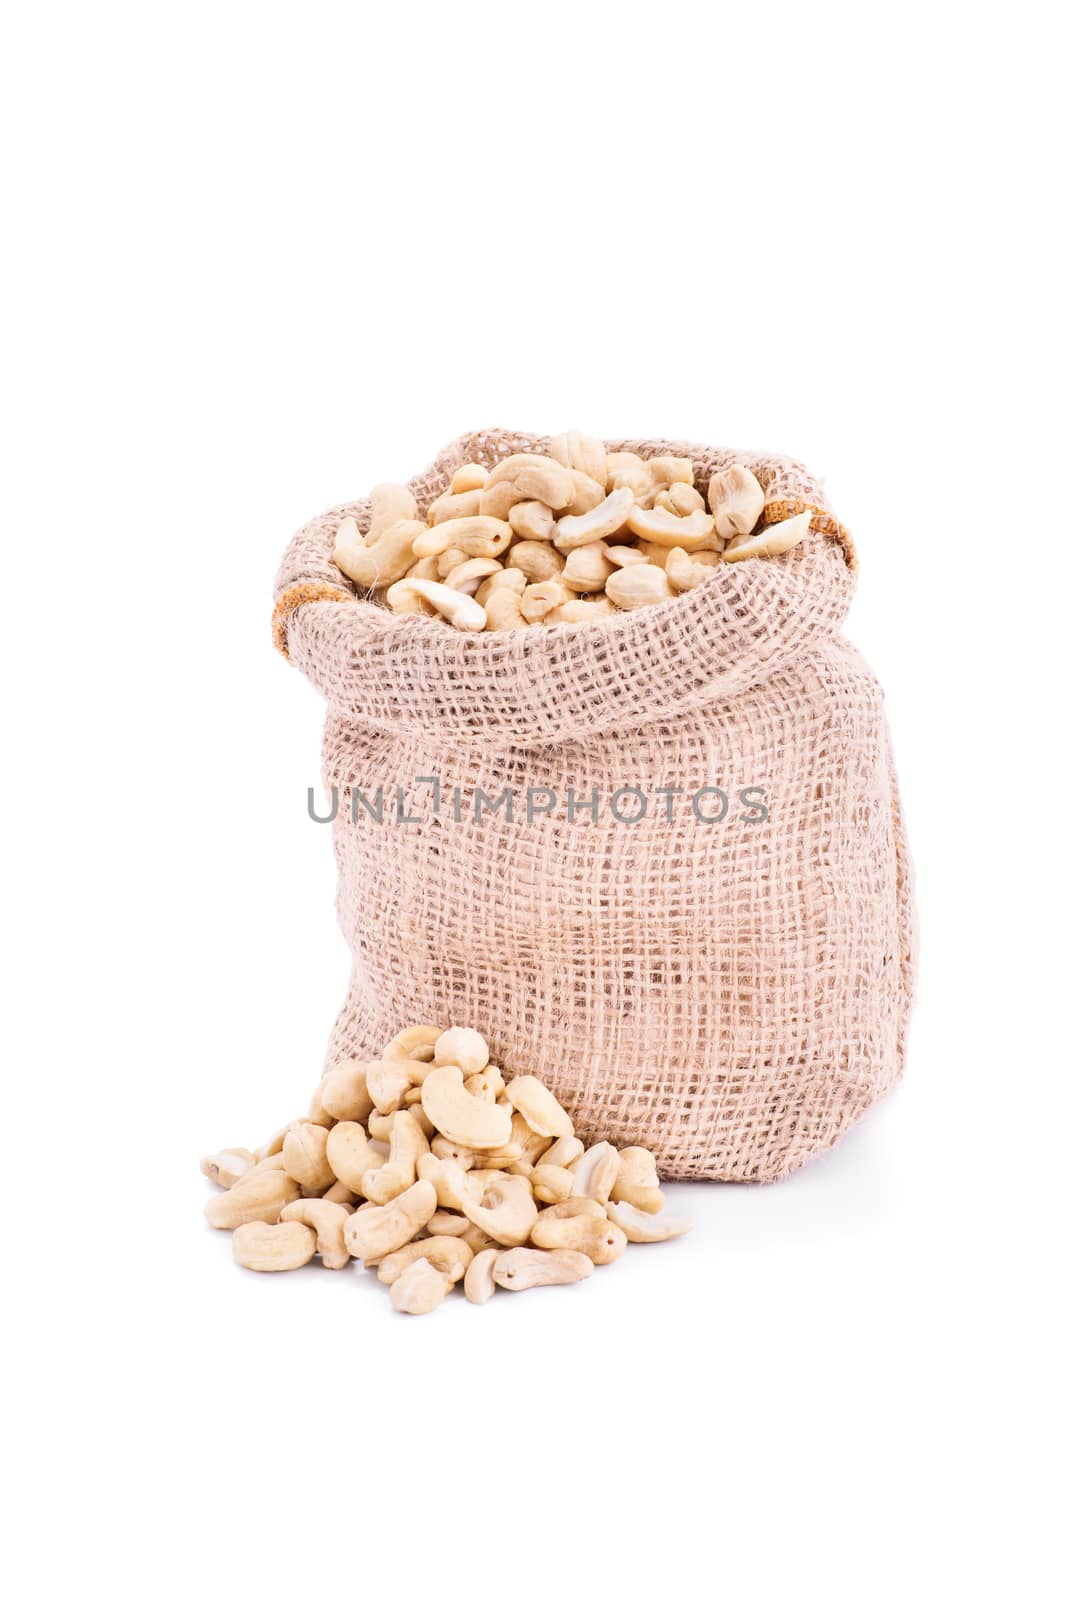 Small burlap sack of fresh cashews, isolated on white background.